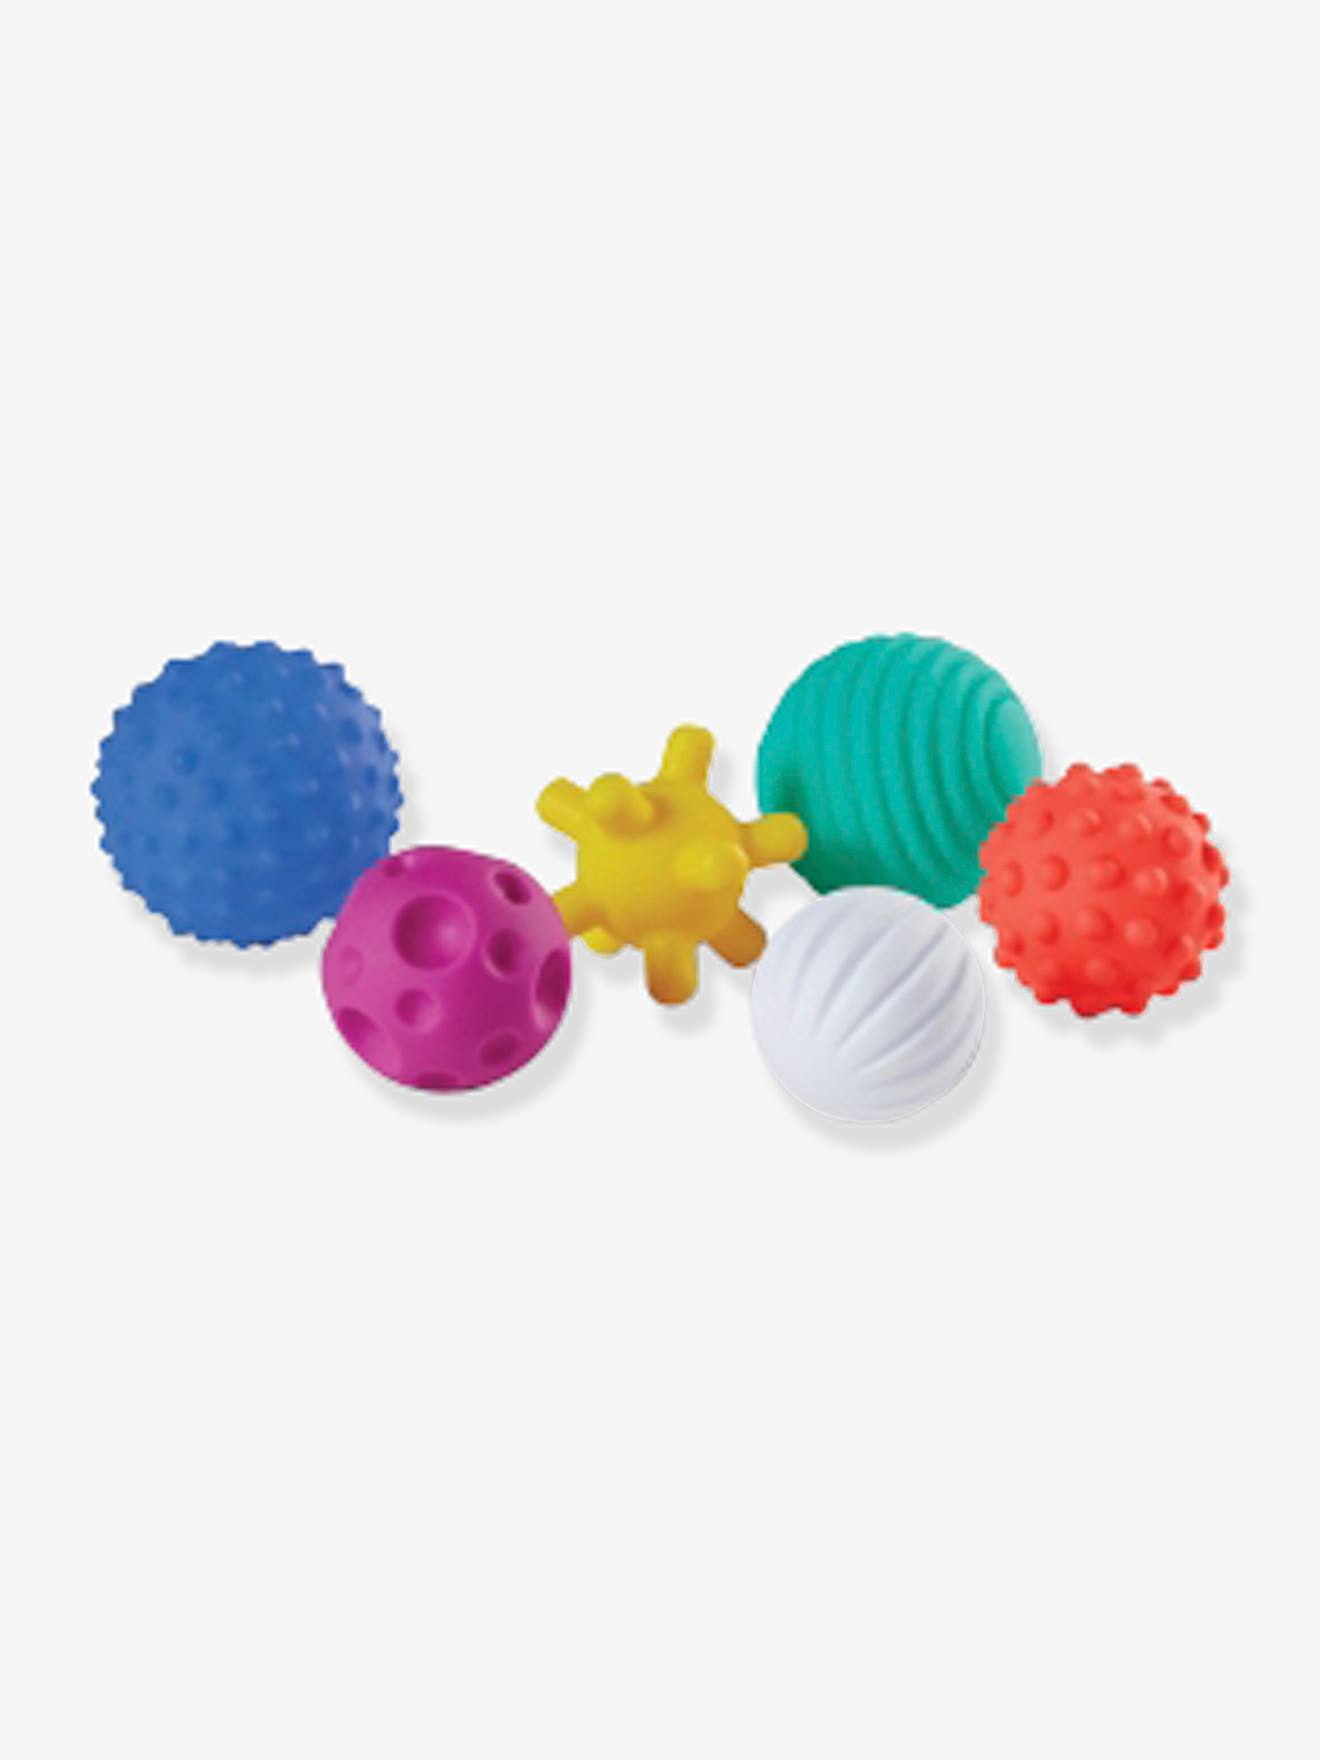 6 balles souples sensorielles multicolores - Vertbaudet